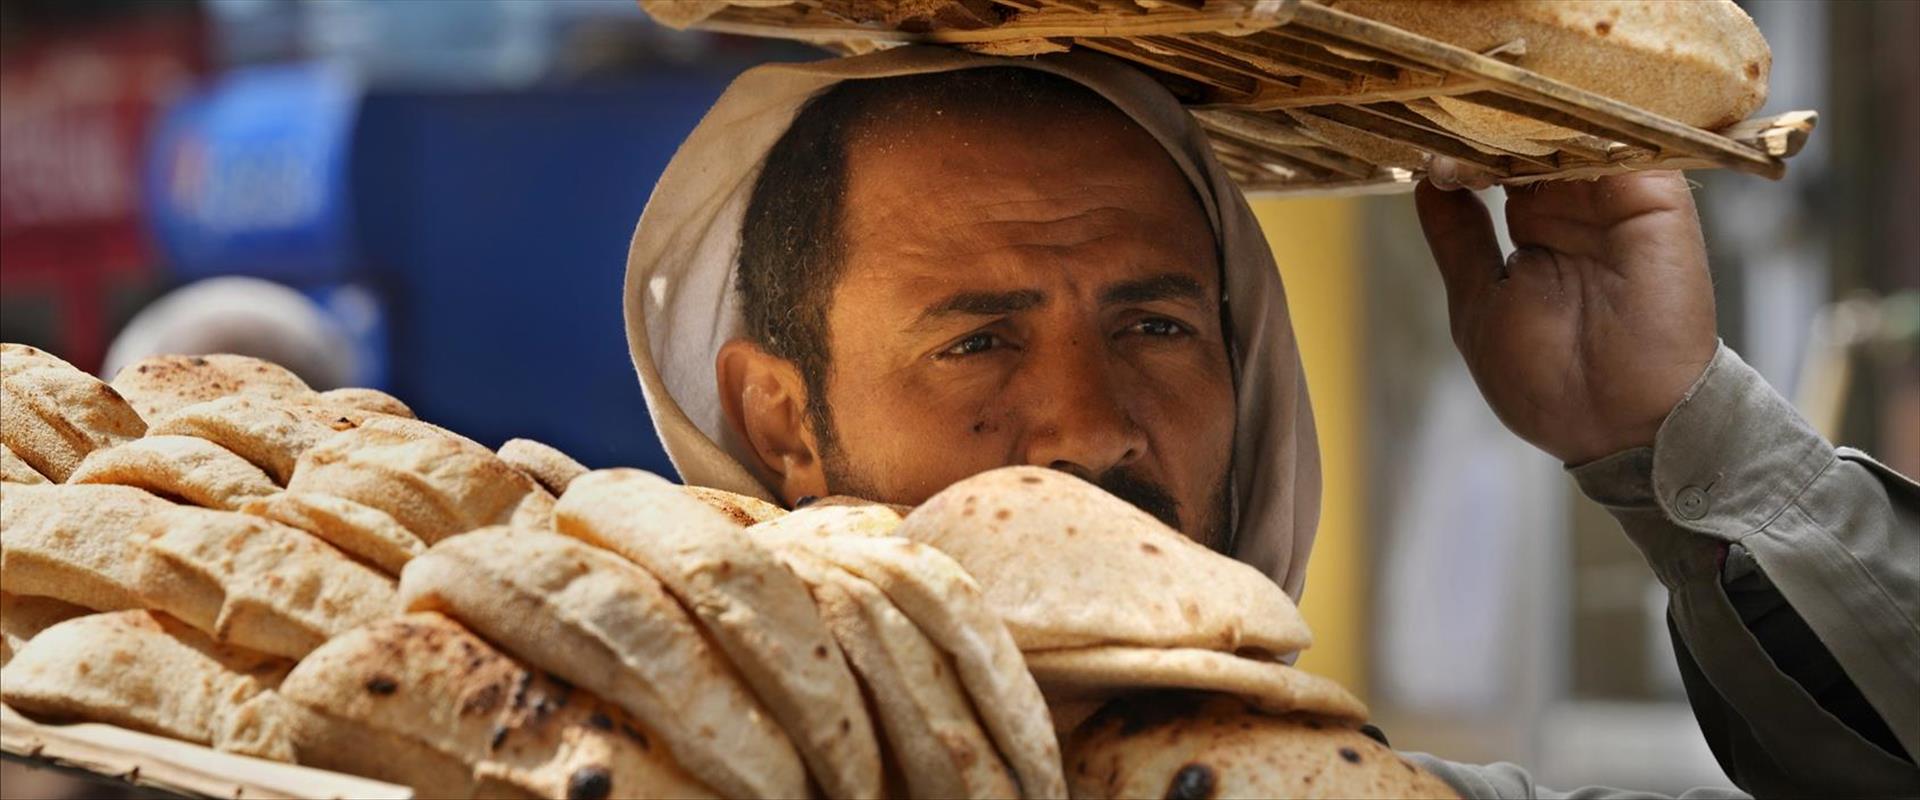 מוכר לחם בקהיר, השבוע